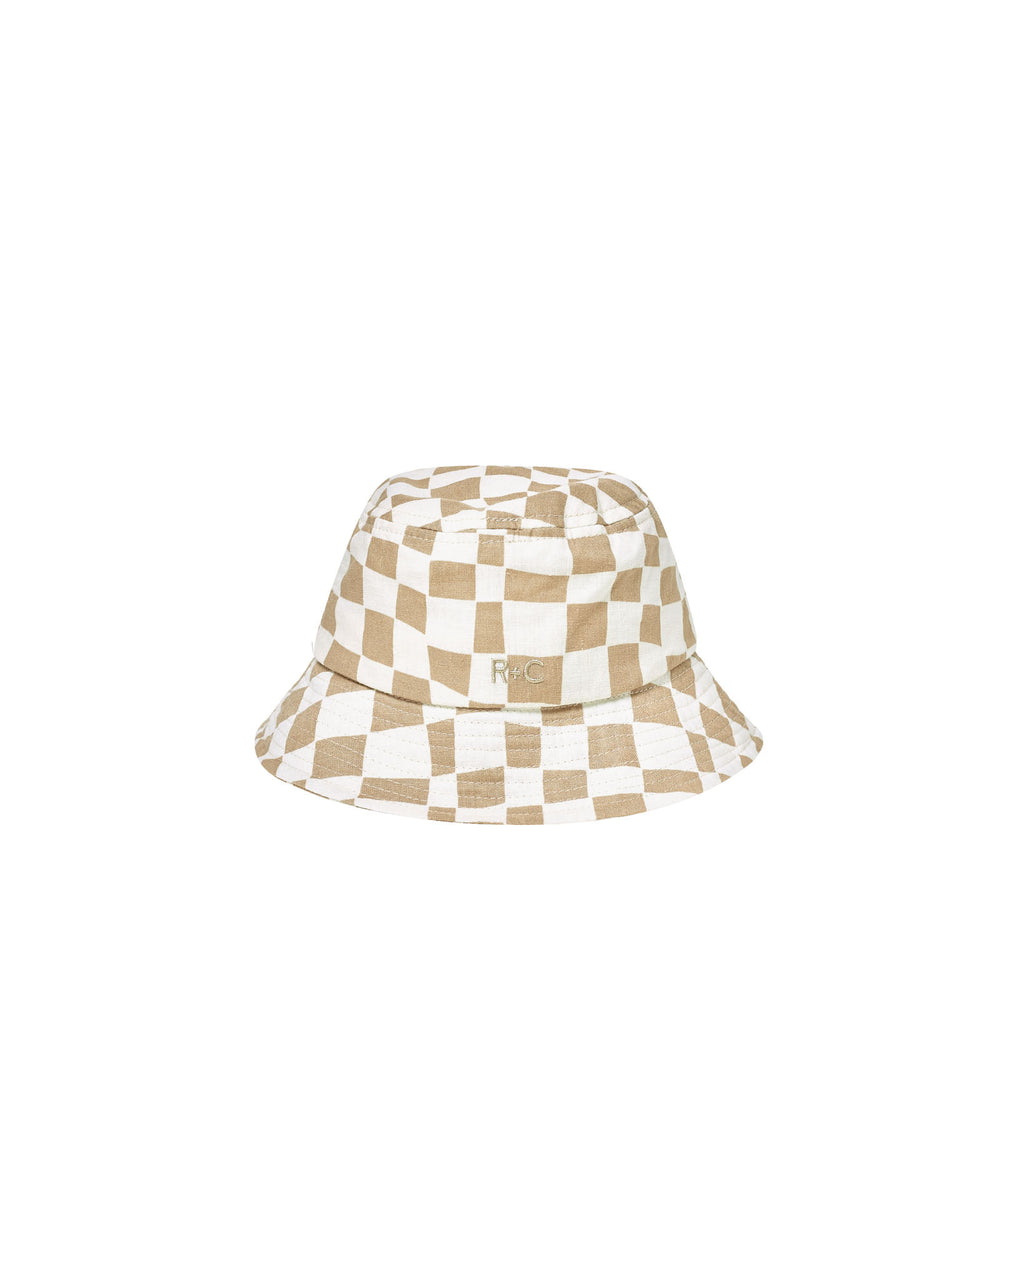 Rylee + Cru Bucket Hat - Sand Checker